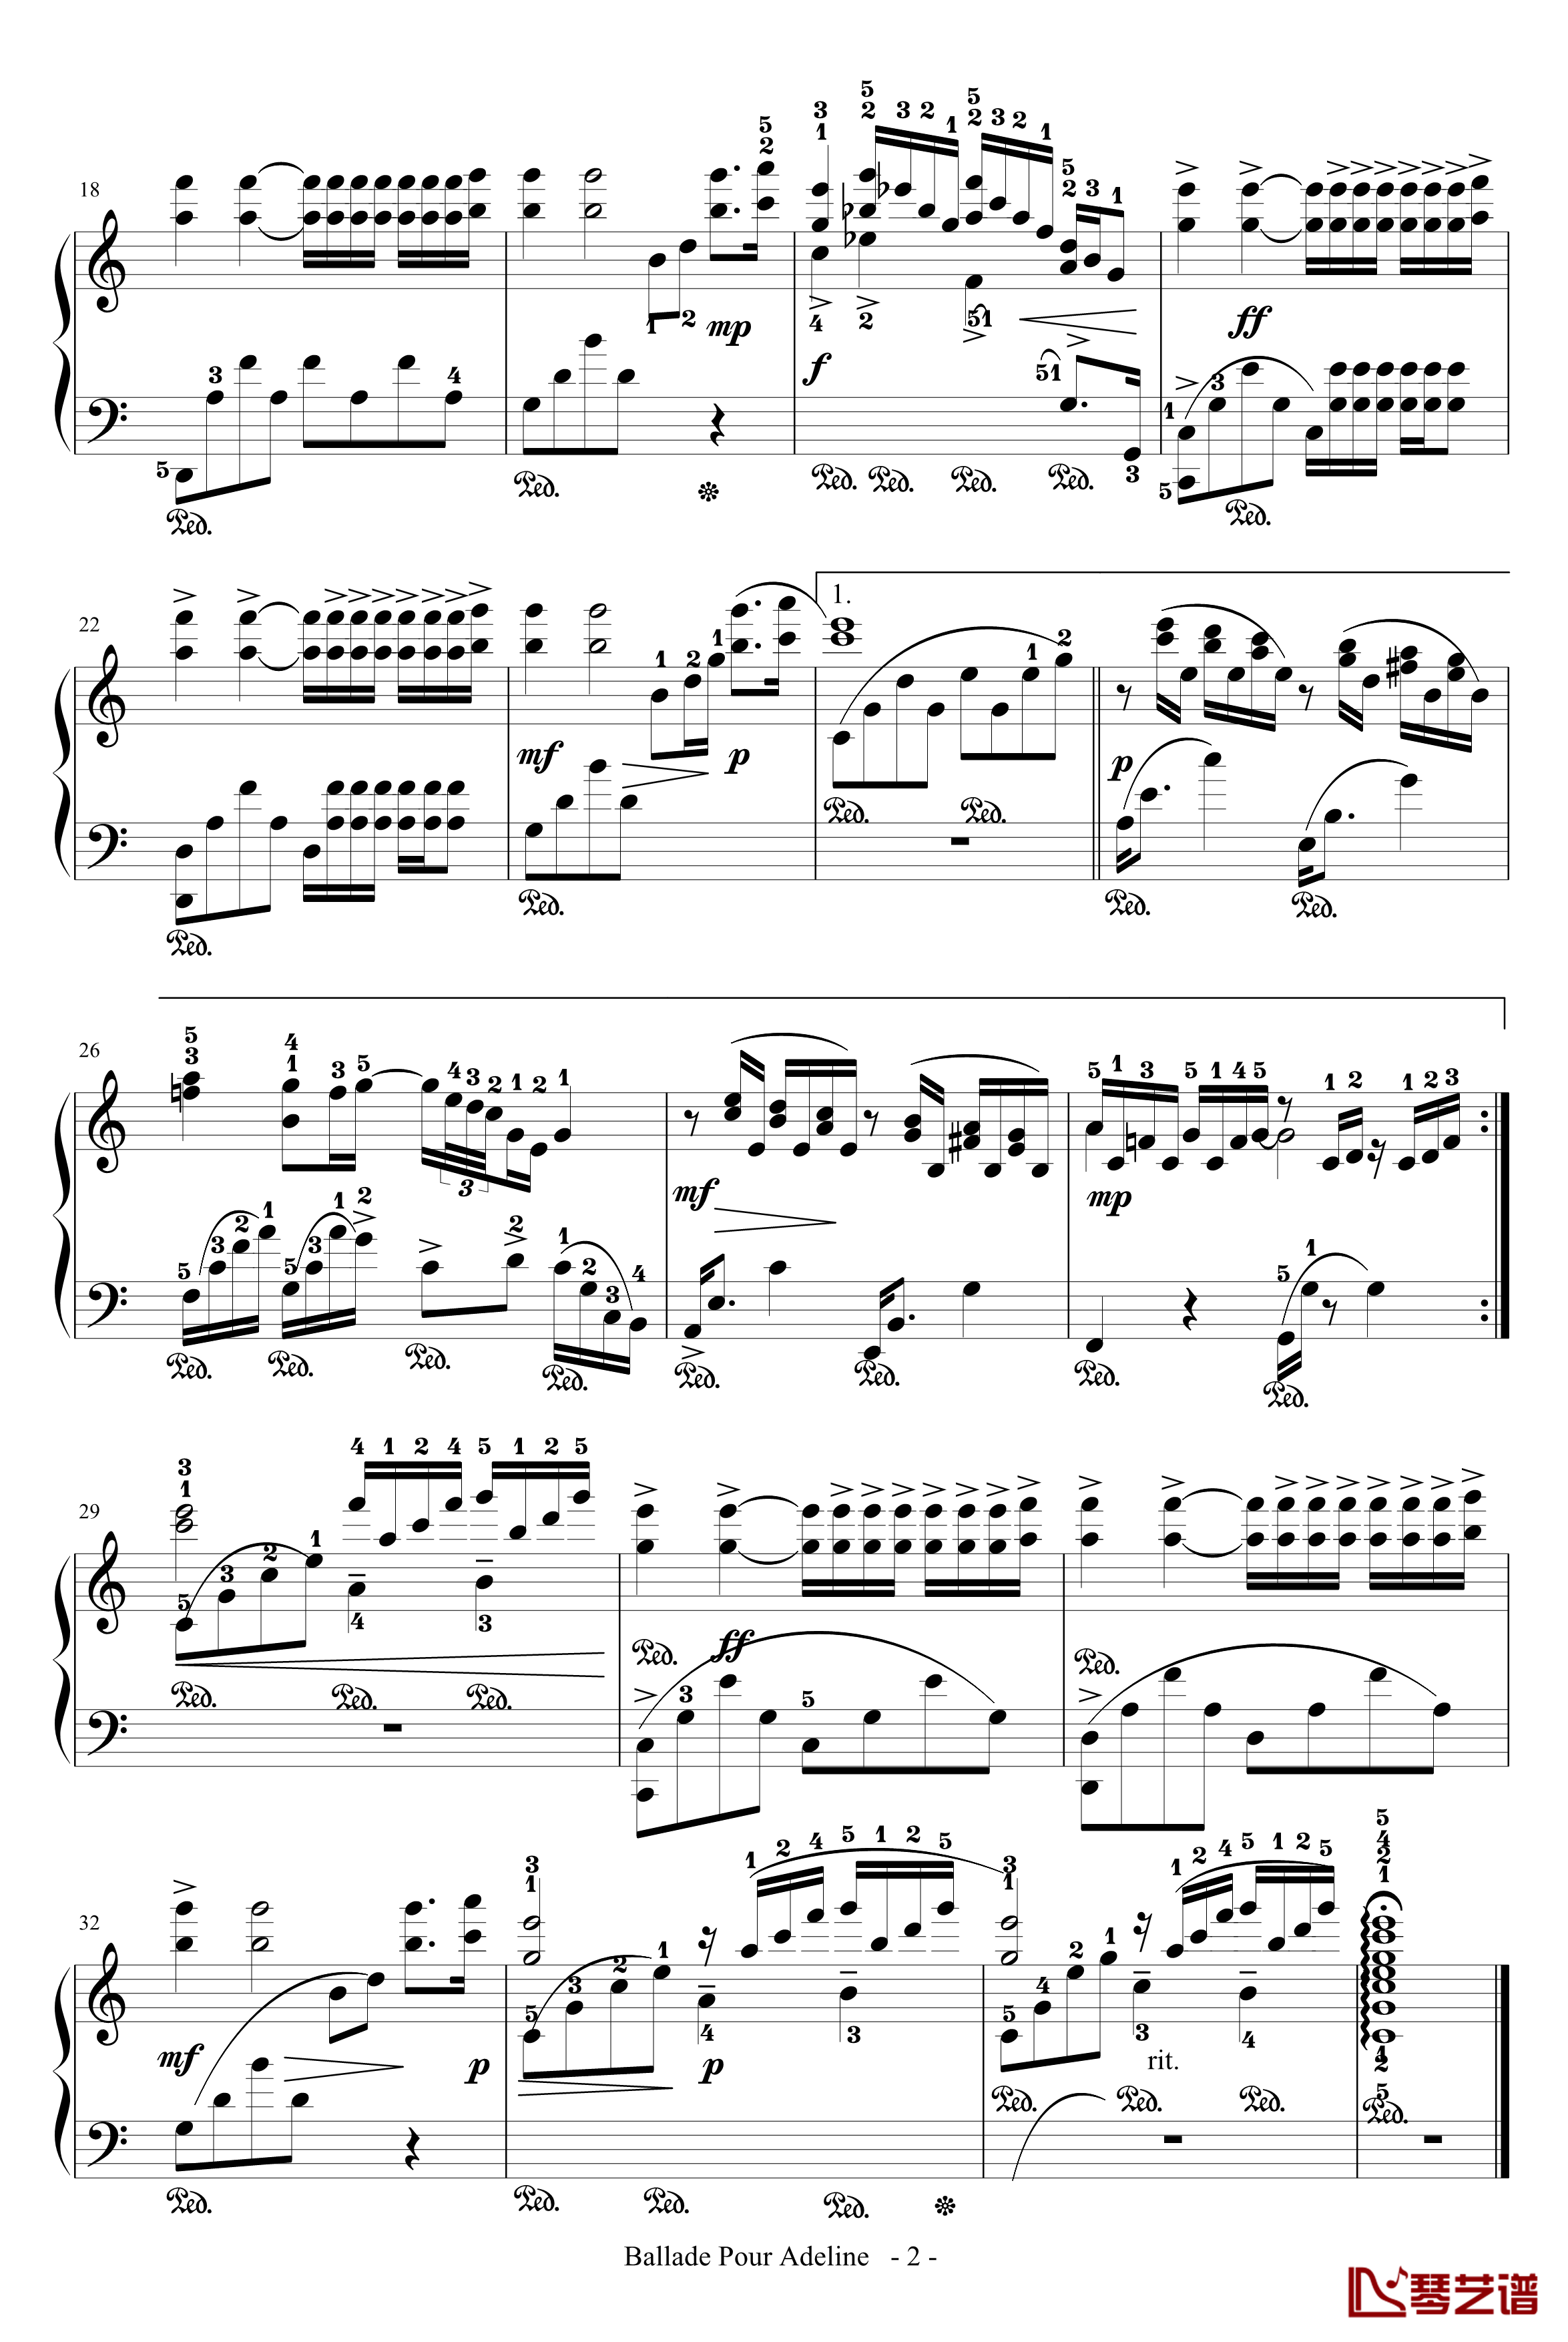 水边的阿蒂丽娜钢琴谱-带指法-适度简化-塞内维尔